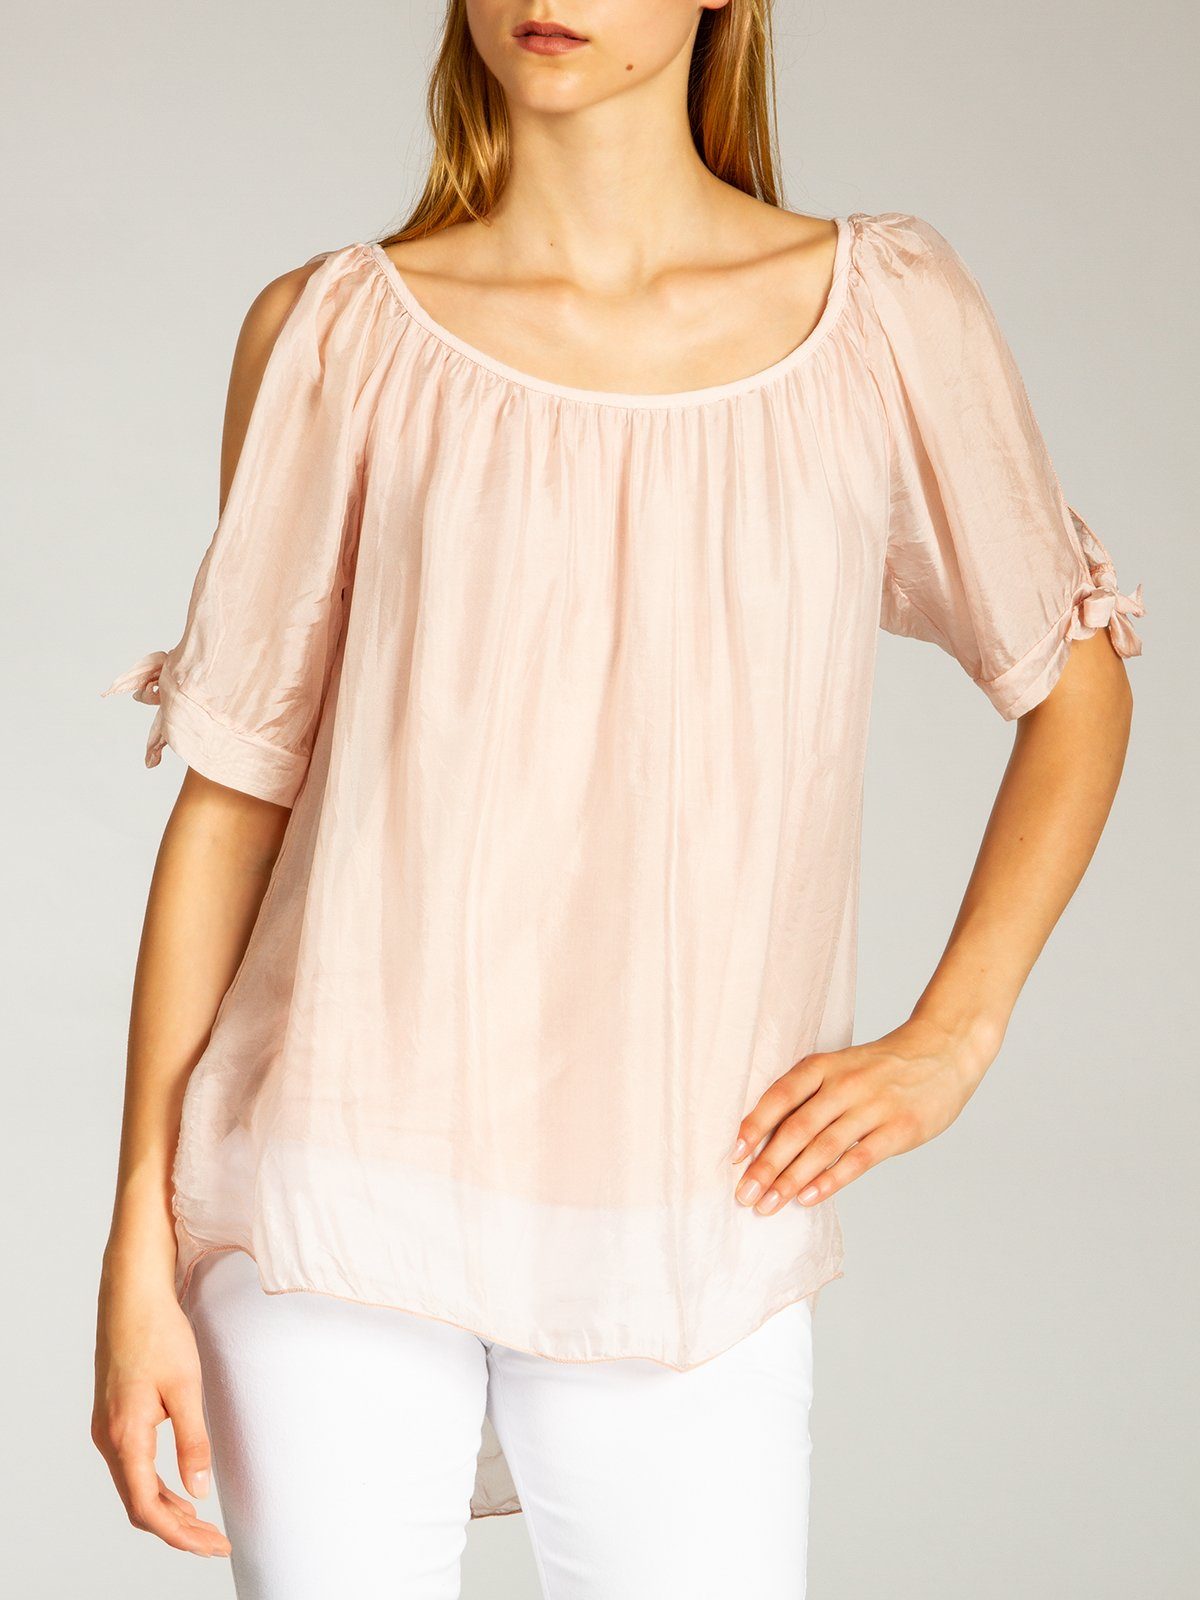 Bluse Shirtbluse Caspar BLU020 Sommer rosa mit Damen Seidenanteil elegante leichte lange